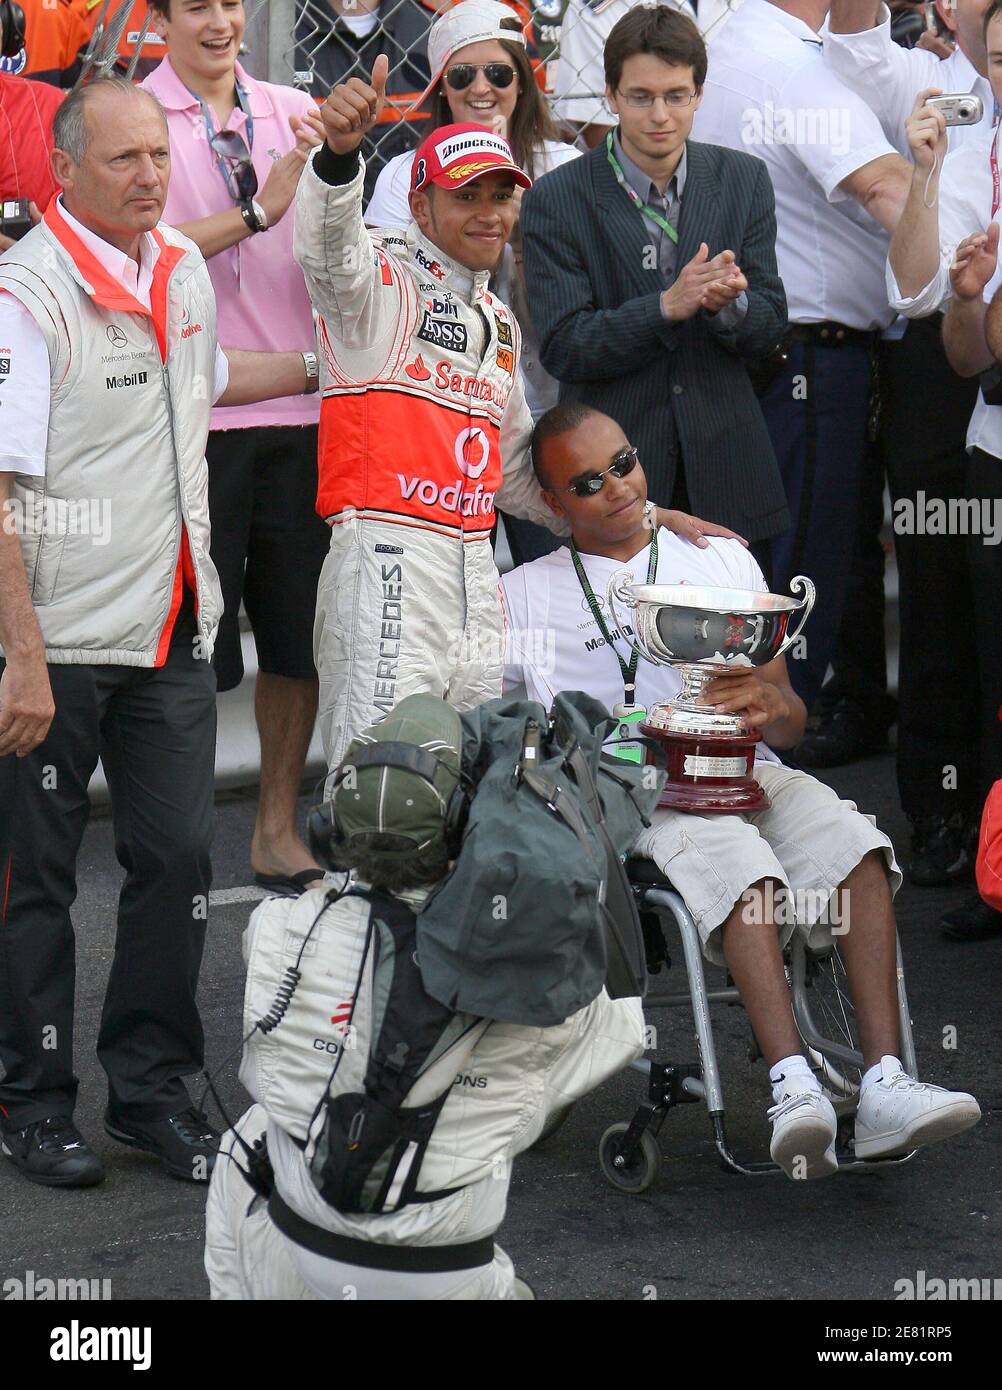 Il rookie britannico di Formula uno Lewis Hamilton della McLaren Mercedes con suo fratello dopo il Gran Premio di Monaco a Monte-Carlo, Monaco, il 27 maggio 2007. Alonso vince davanti ad Hamilton e massa. Foto di Frederic Nebinger/Cameleon/ABACAPRESS.COM Foto Stock